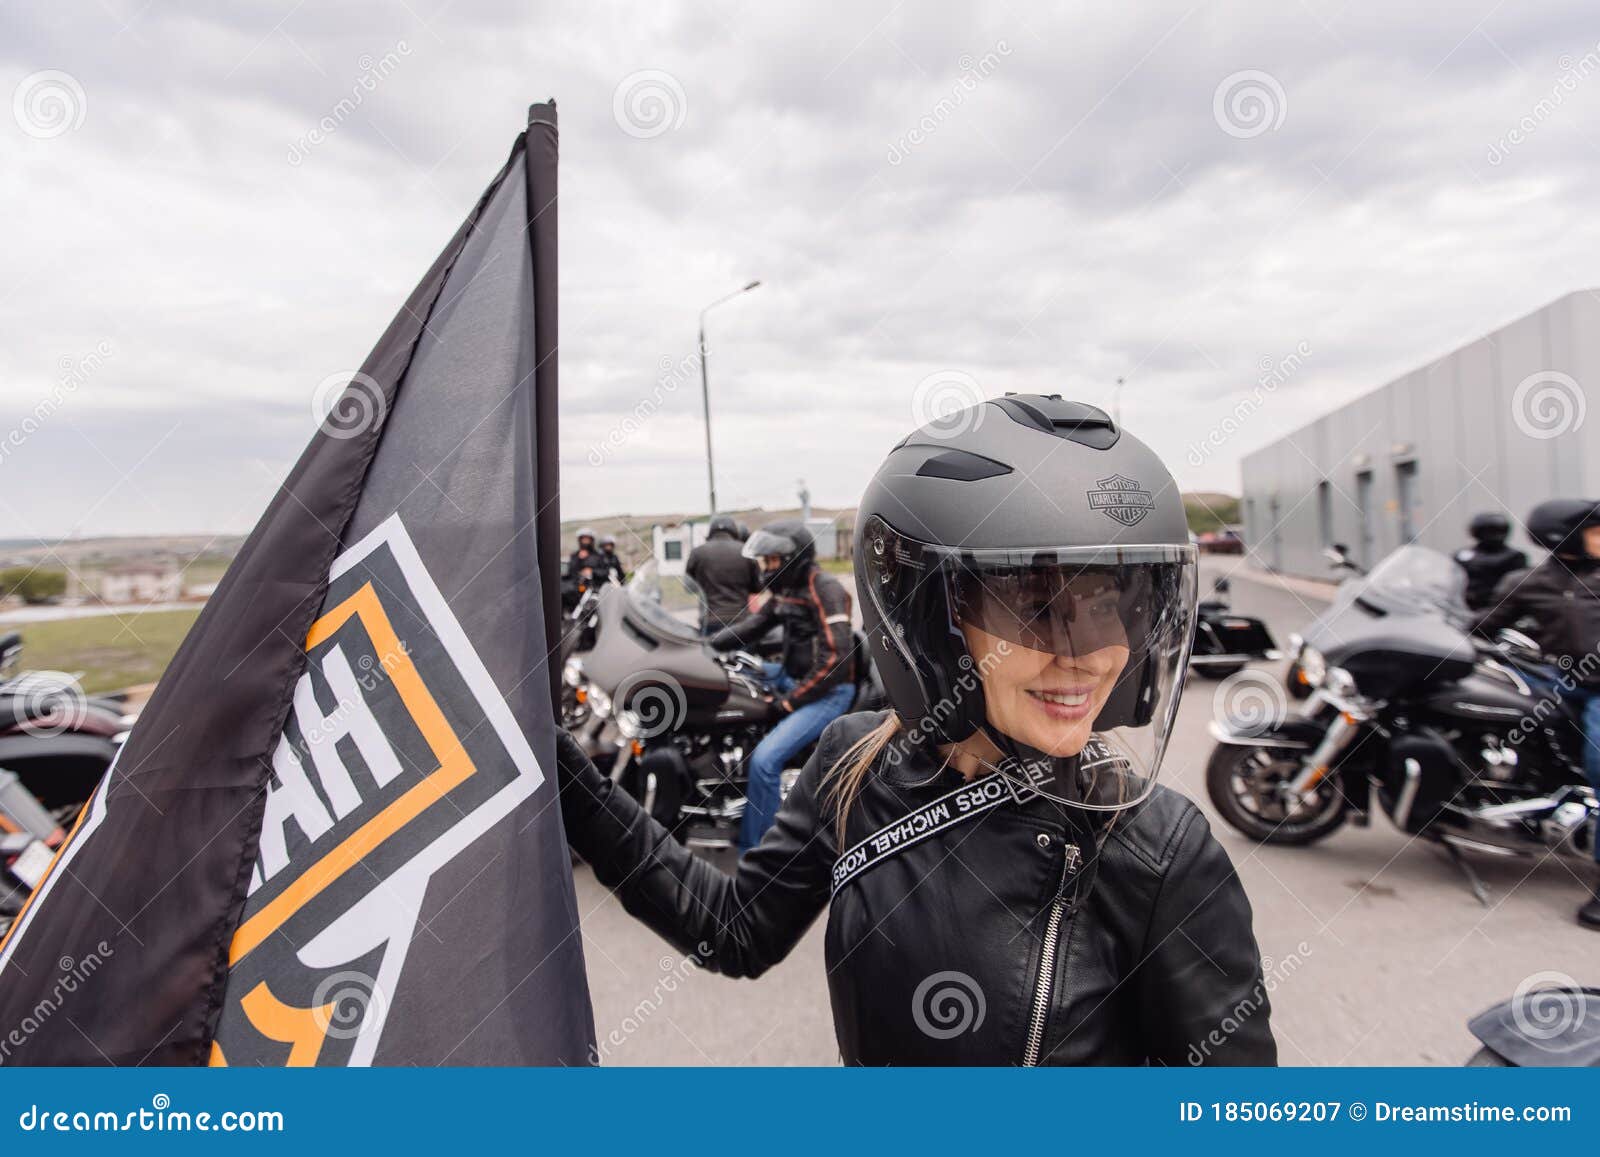 Incitar vestirse Presunto Krasnoyarsk Rusia 16 May 2020 : Harley Davidson Free Ride Al Aire Libre.  Moto Chica Con Casco De Pie Fotografía editorial - Imagen de harley, rueda:  185069207